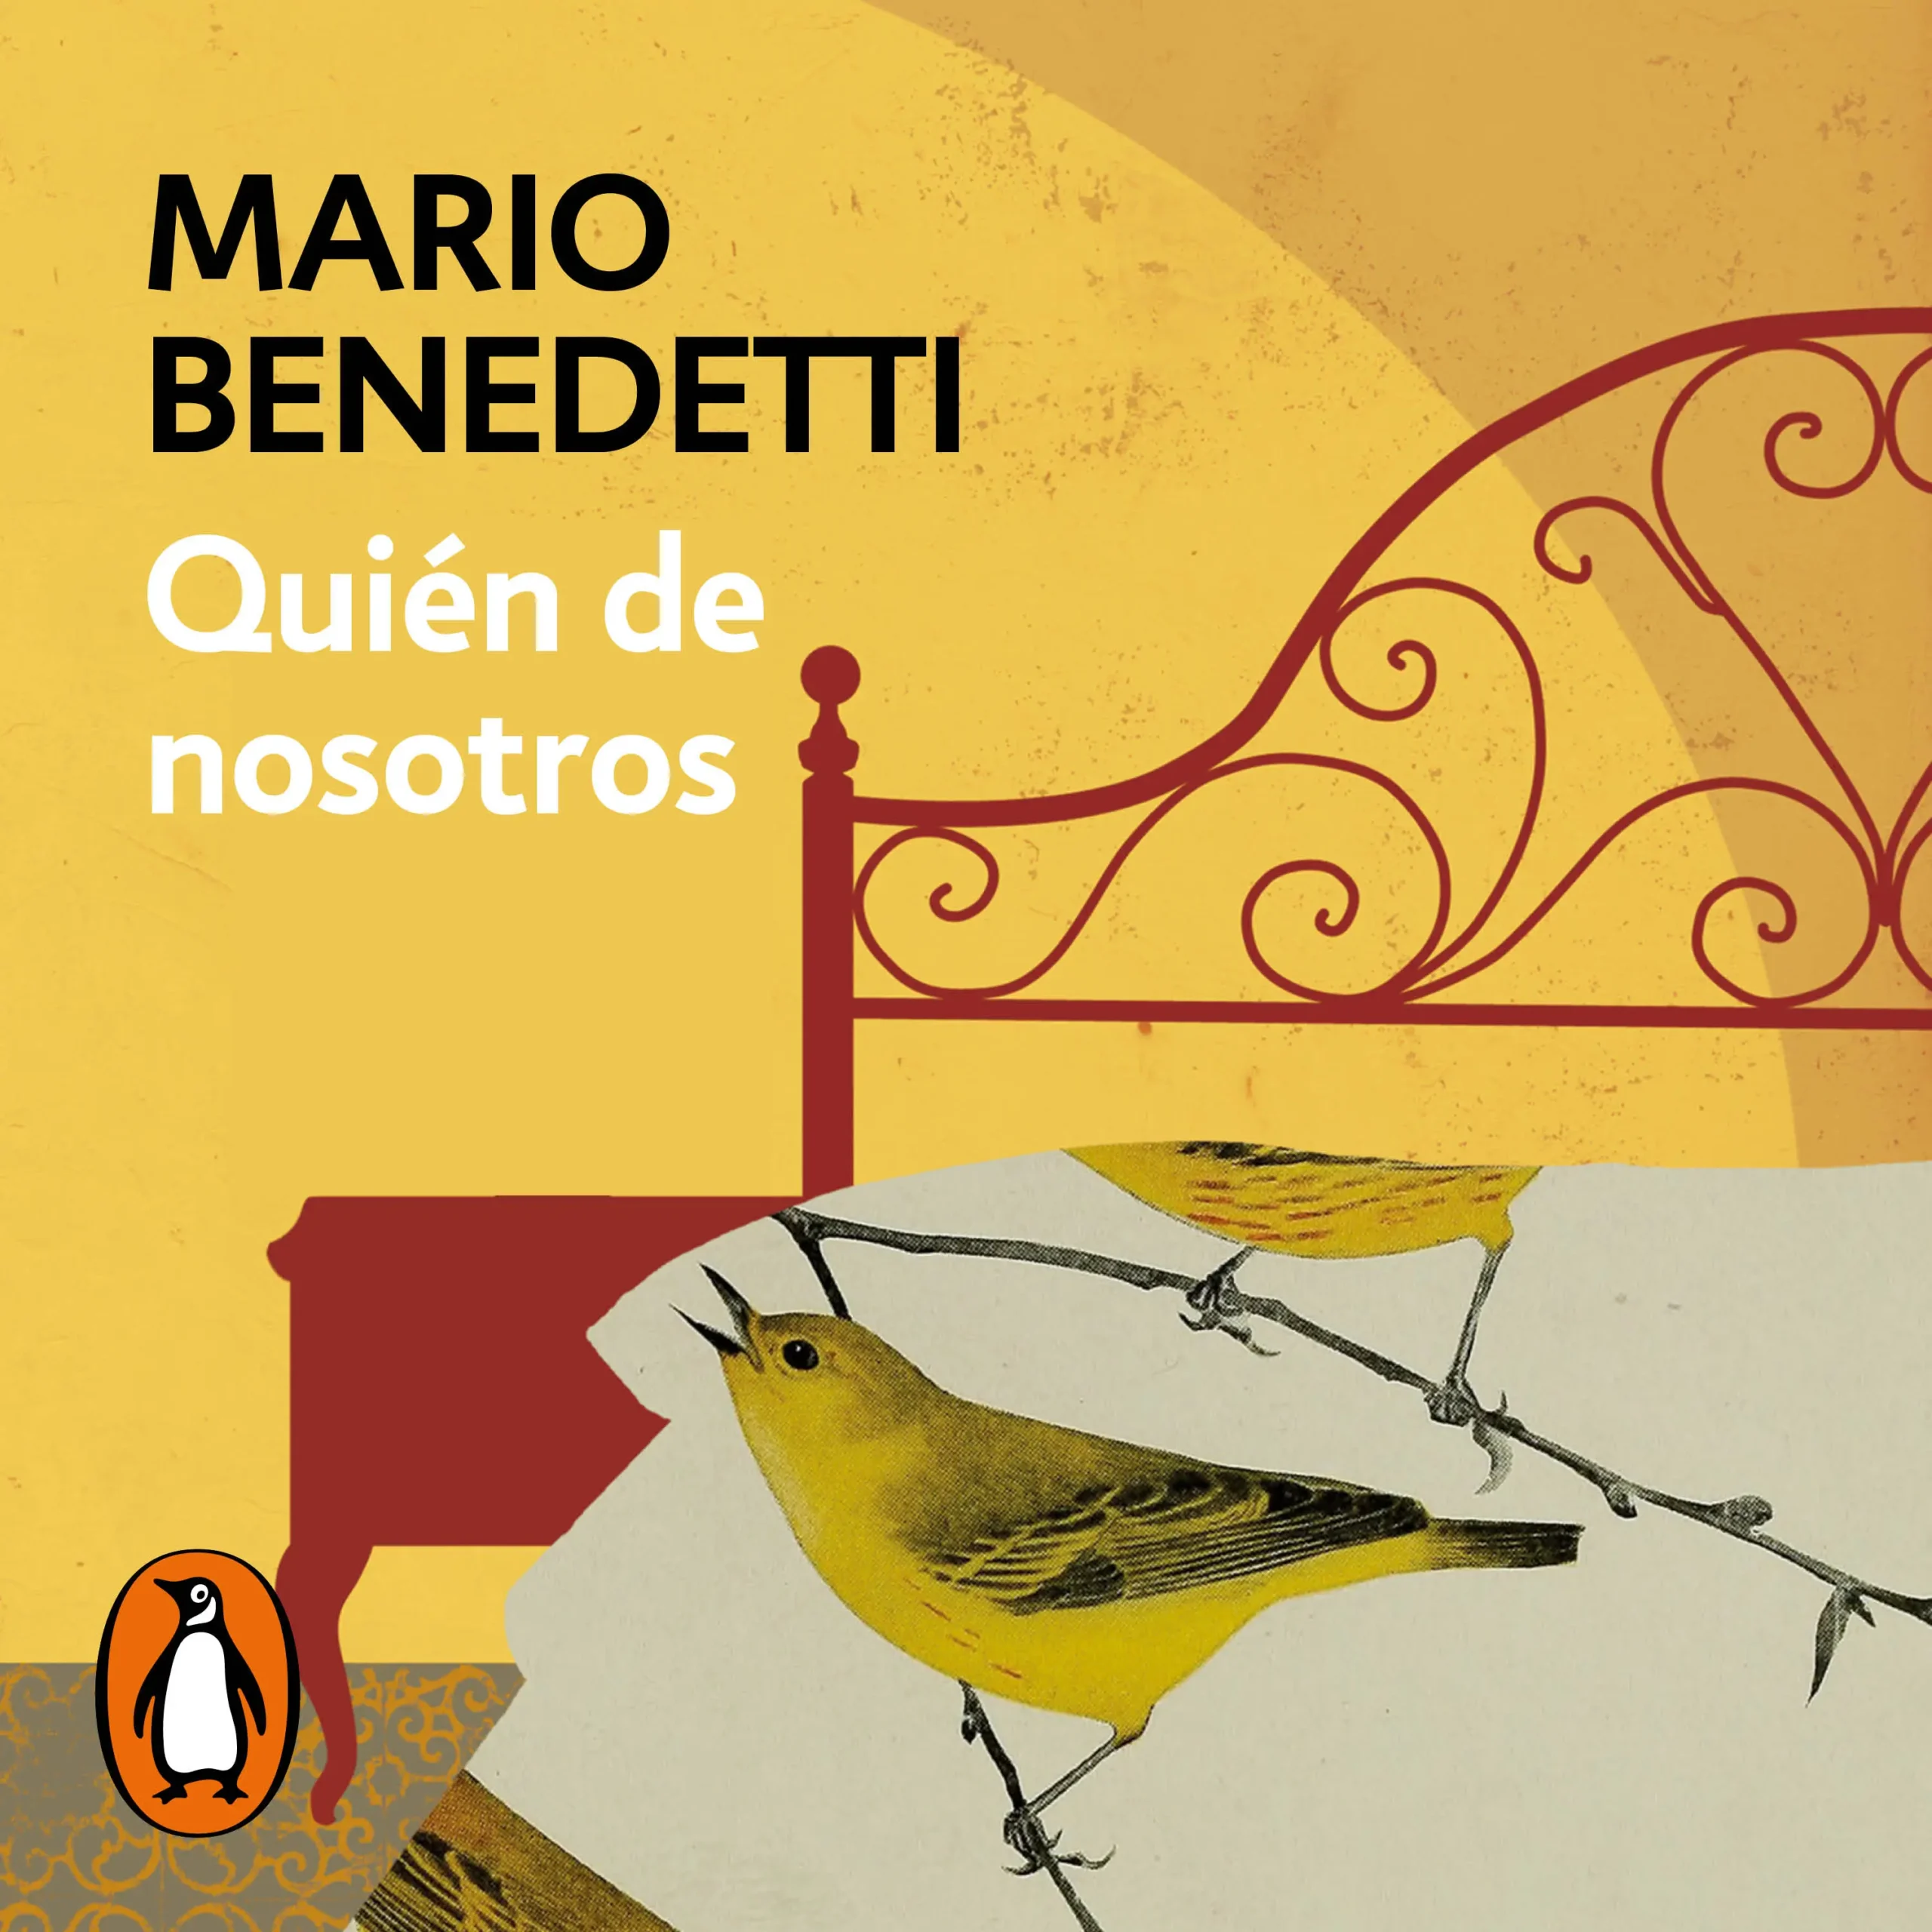 resumen del libro quien de nosotros mario benedetti - Quién de nosotros Mario Benedetti resumen